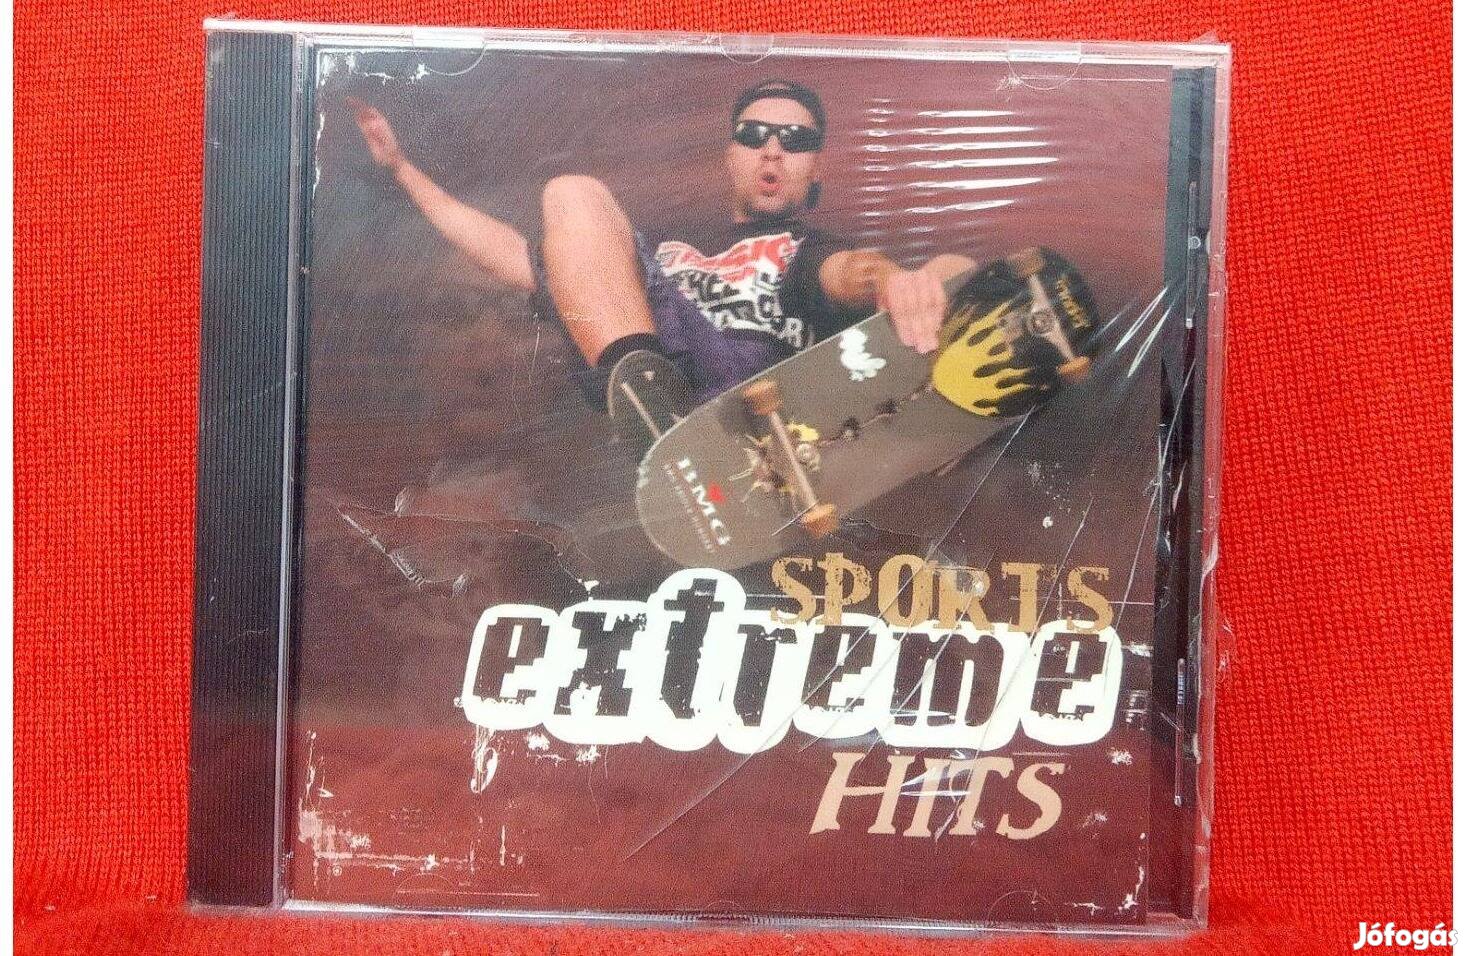 Extreme Sports Hits -Válogatás CD./új,fóliás/